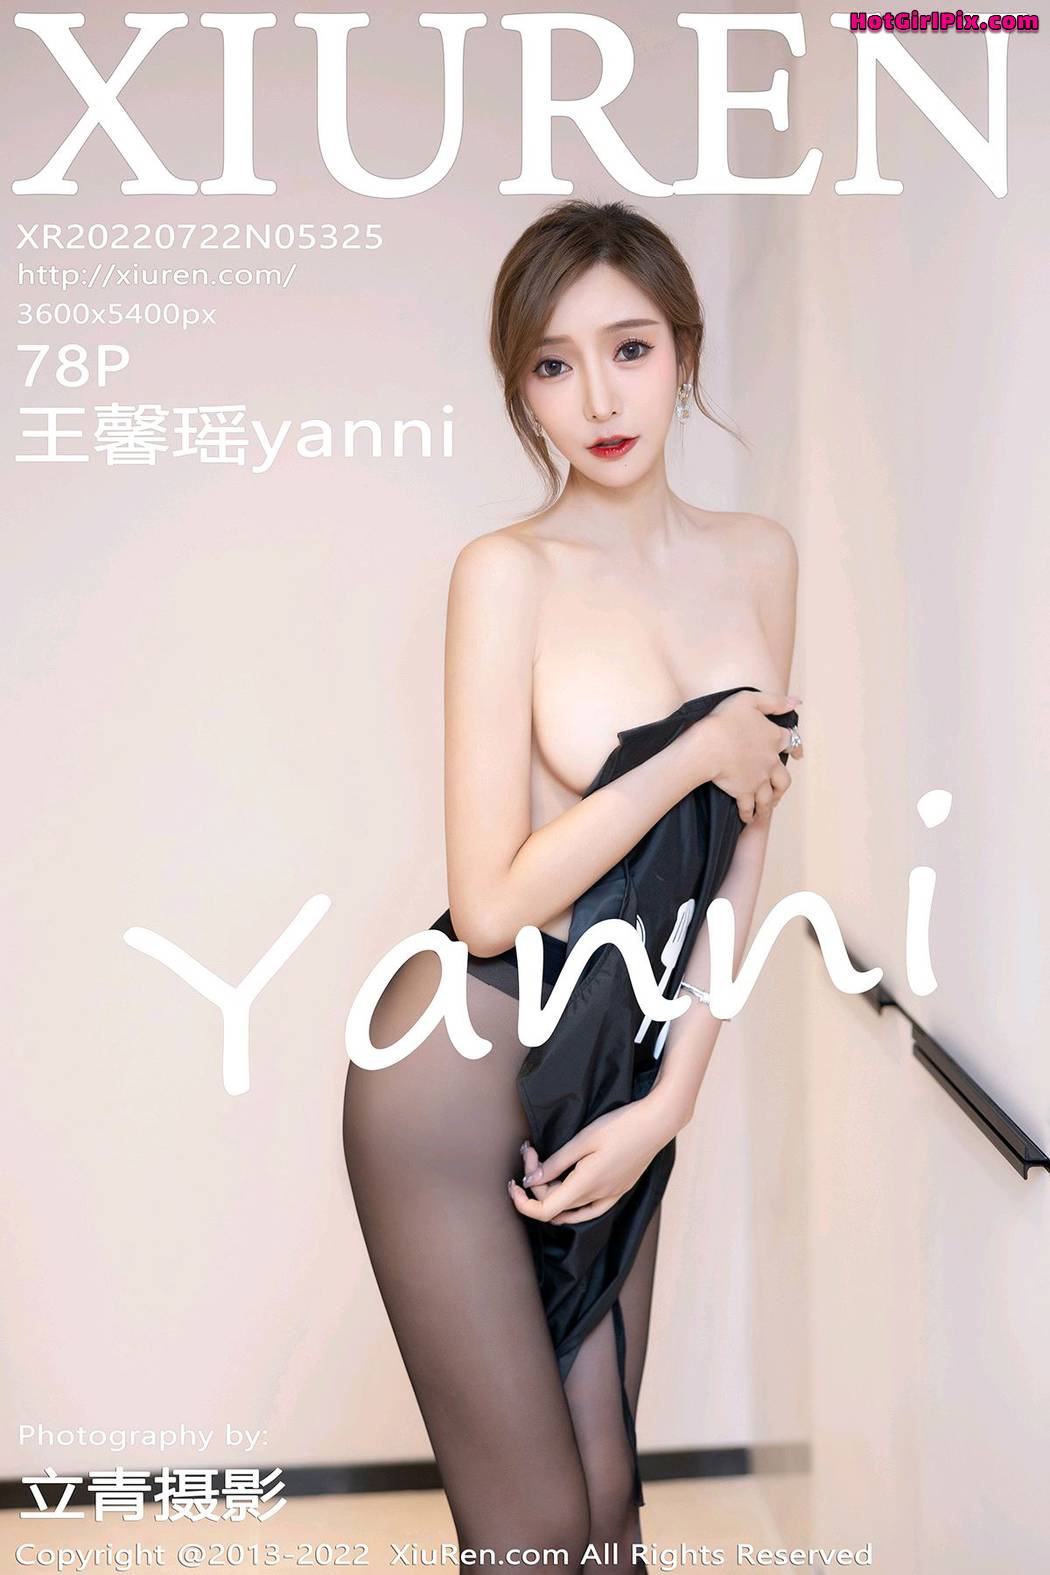 [XIUREN] No.5325 Wang Xin Yao 王馨瑶yanni Cover Photo